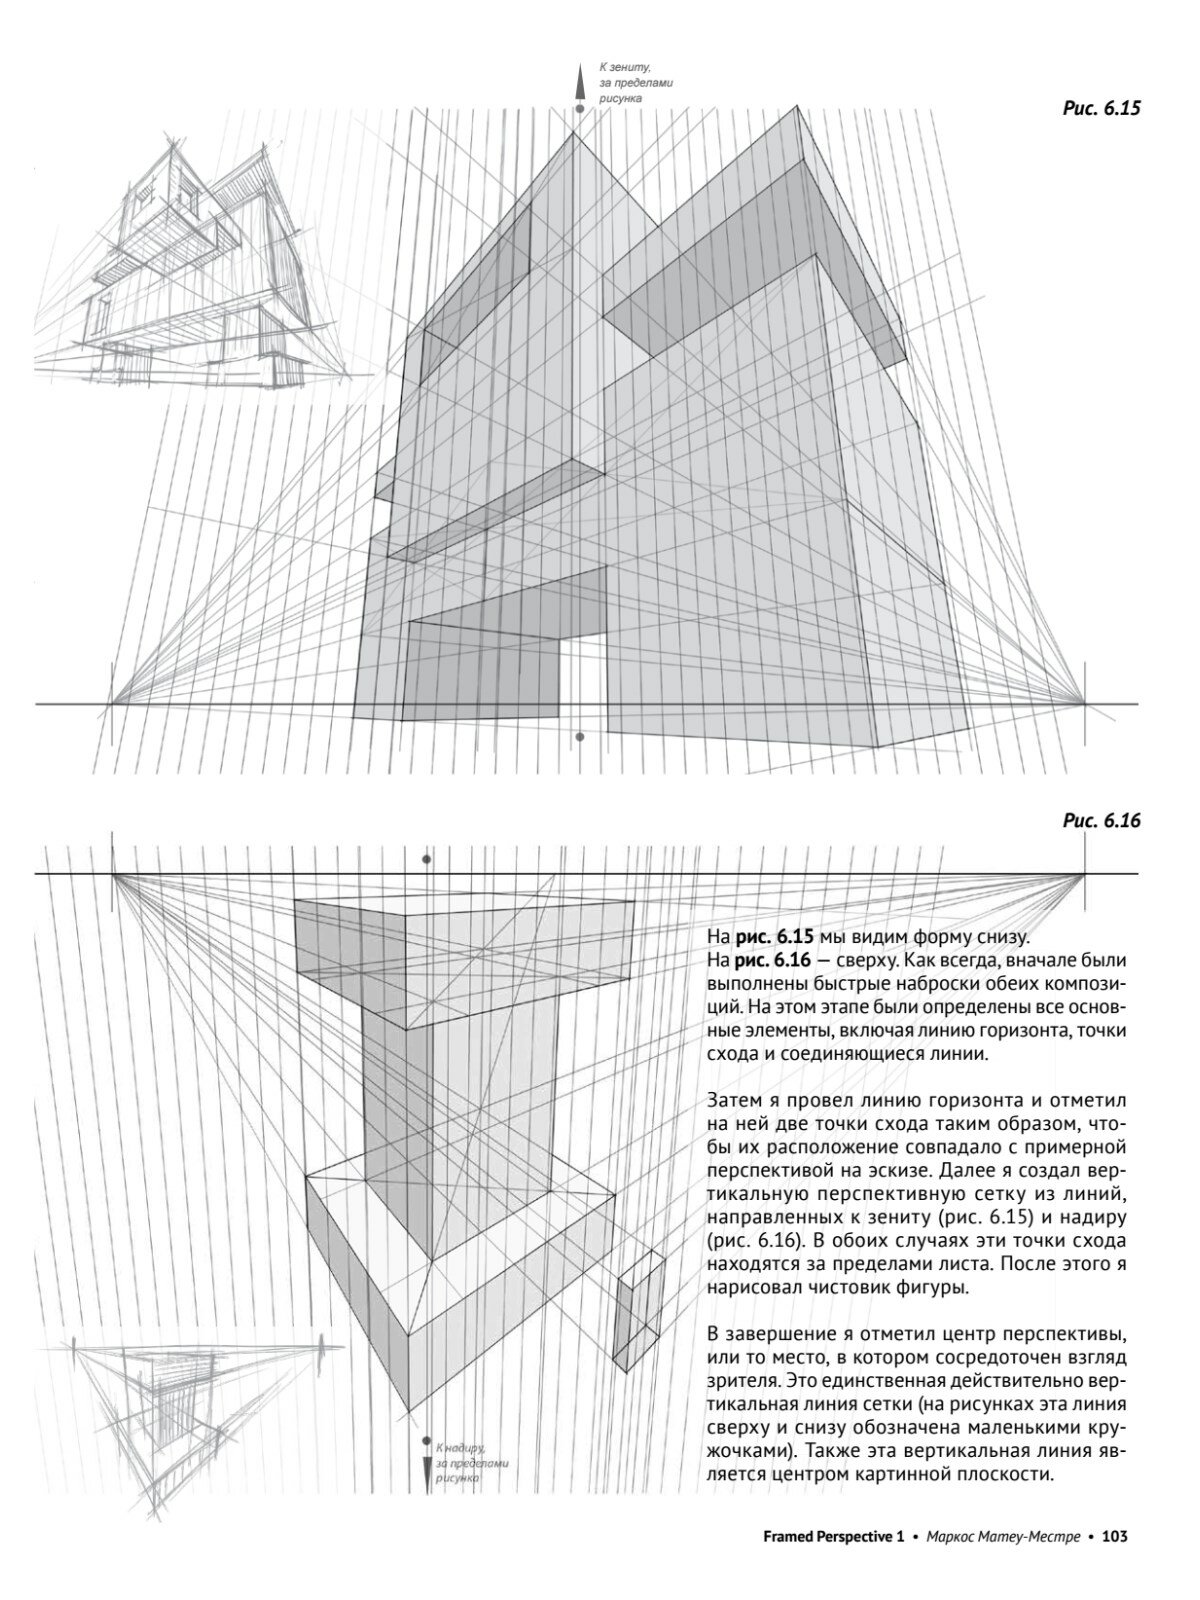 Framed Perspective 1: Техническая перспектива и визуальный сторителлинг - фото №12